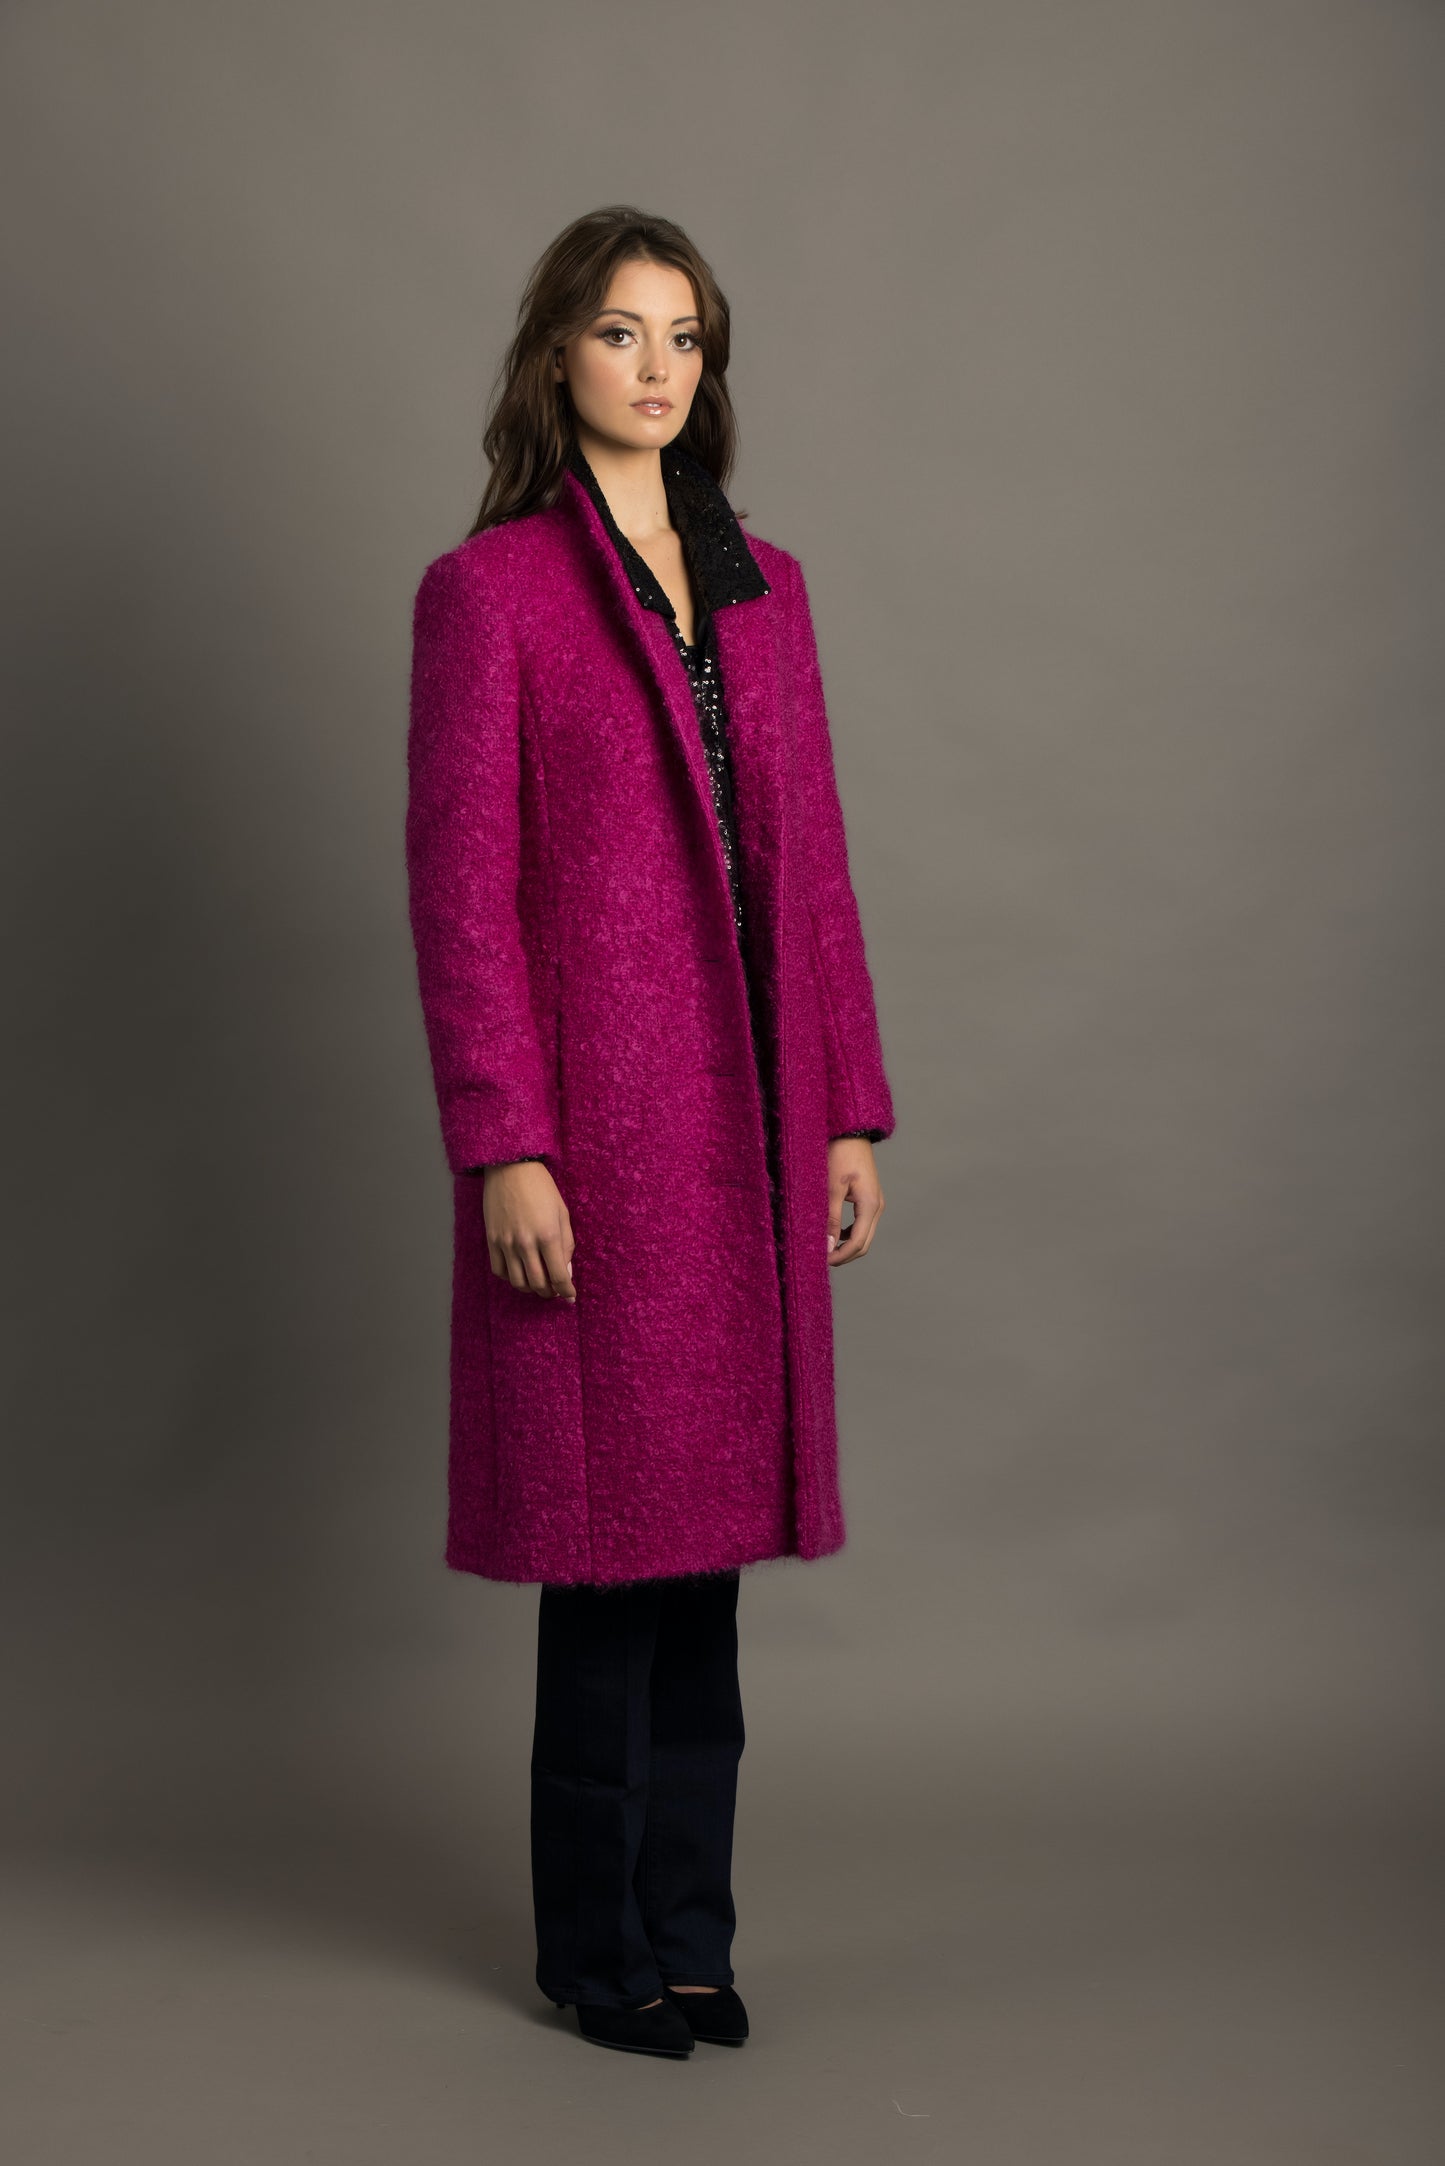 Pink Boucle Wool-Ladies single breasted coat.